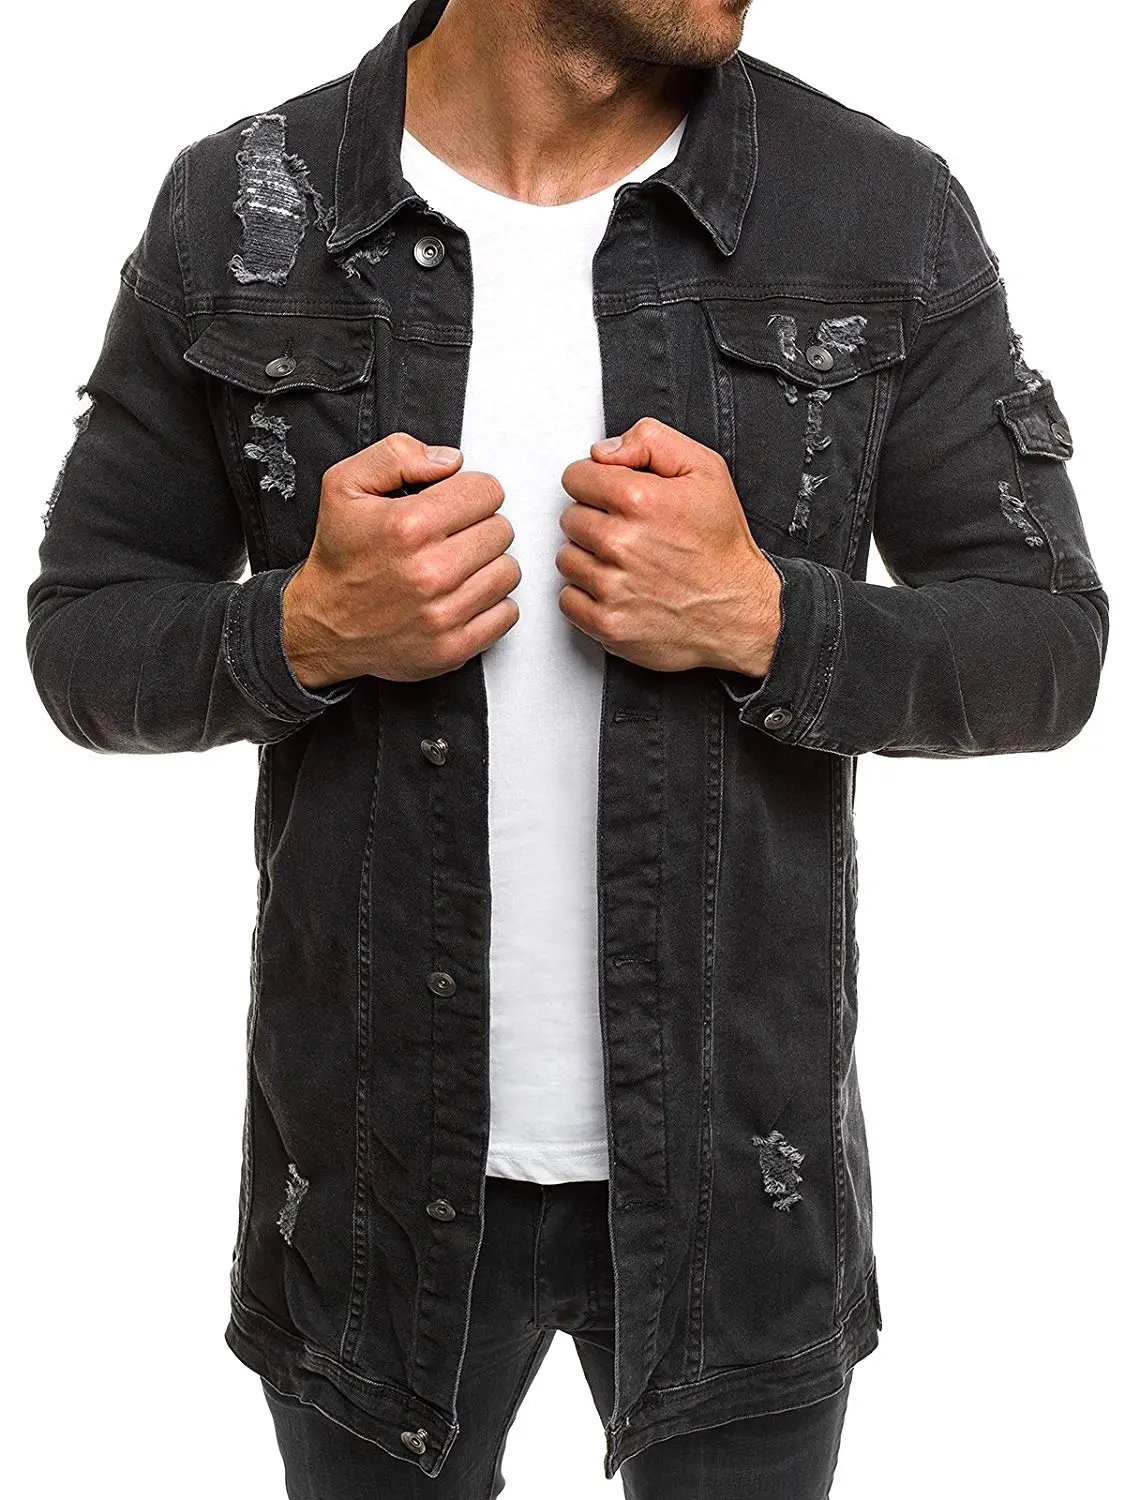 Мужское Ковбойское пальто высокого качества, осенний стиль, джинсовая куртка с дырками, свободный тонкий рукав, ковбойская куртка XXXL - Цвет: Черный